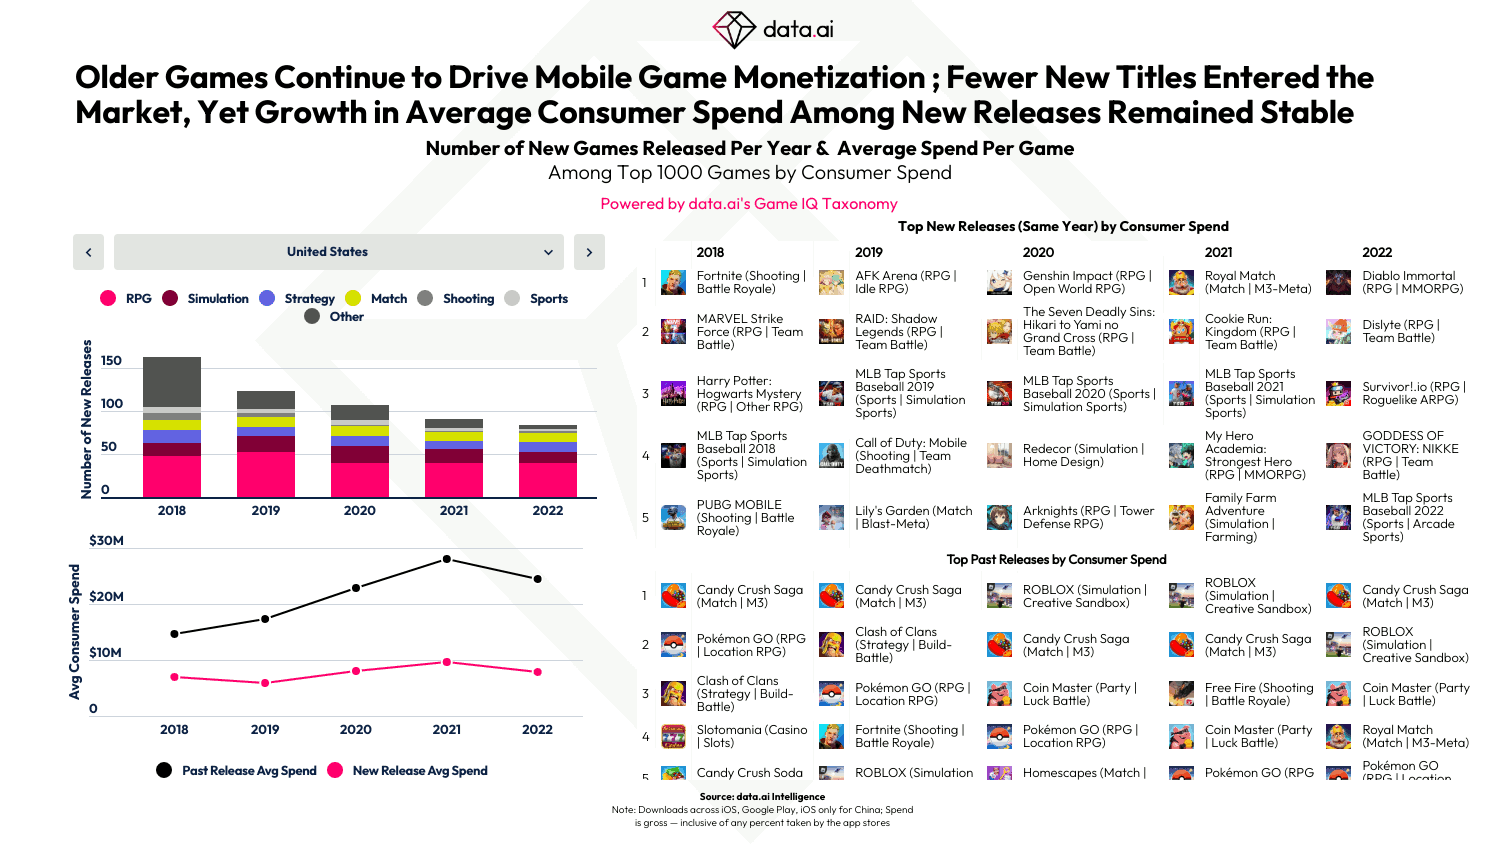 Les jeux plus anciens continuent de tirer la monétisation des jeux mobiles ; moins de nouveaux titres sont entrés sur le marché, mais la croissance des dépenses moyennes des consommateurs parmi les nouvelles versions est restée stable 